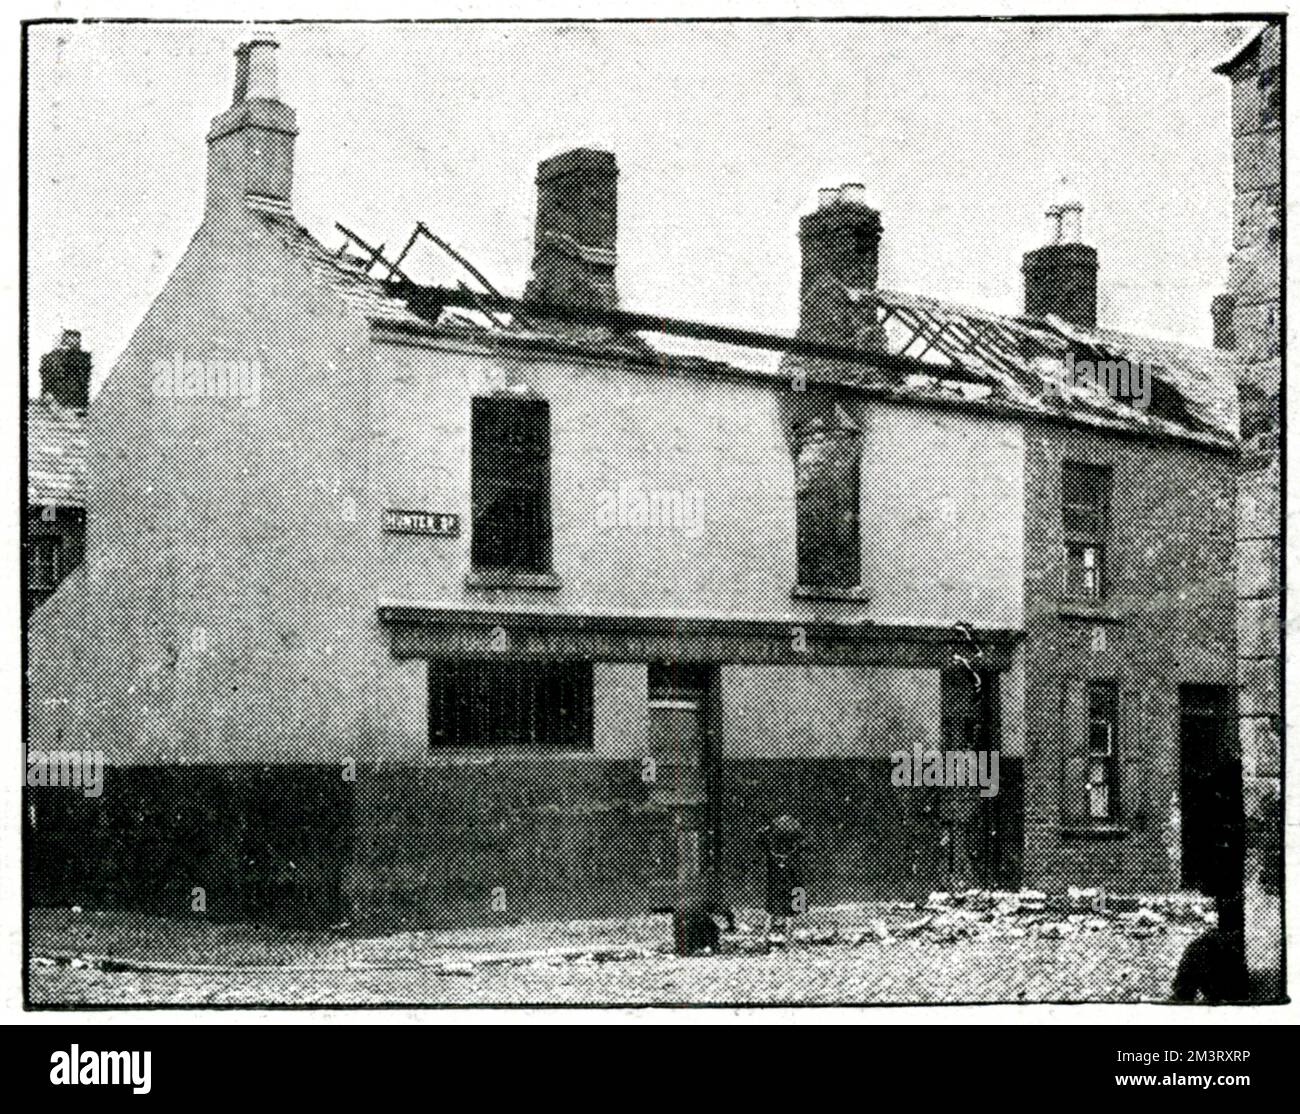 Magasins et maisons du village de Tuam, à Galway, détruits par le feu lors de représailles à la suite du meurtre de deux gendarmes de la police pendant la guerre d'indépendance. Date: 1921 Banque D'Images